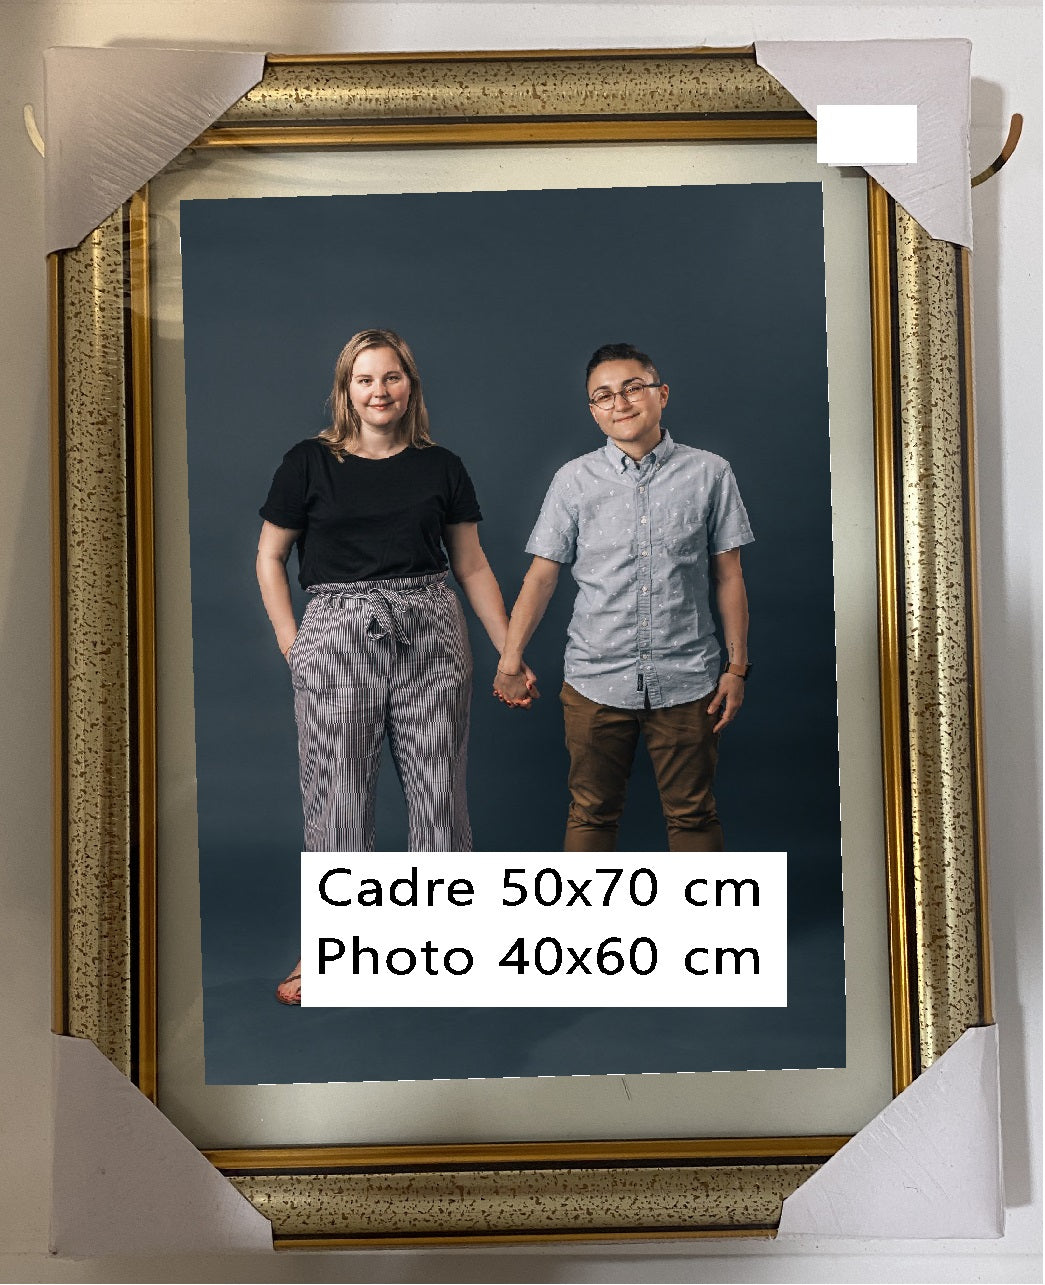 Cadre 3 couleurs 50x70 avec photo 40x60 – Shopping cadeaux 93